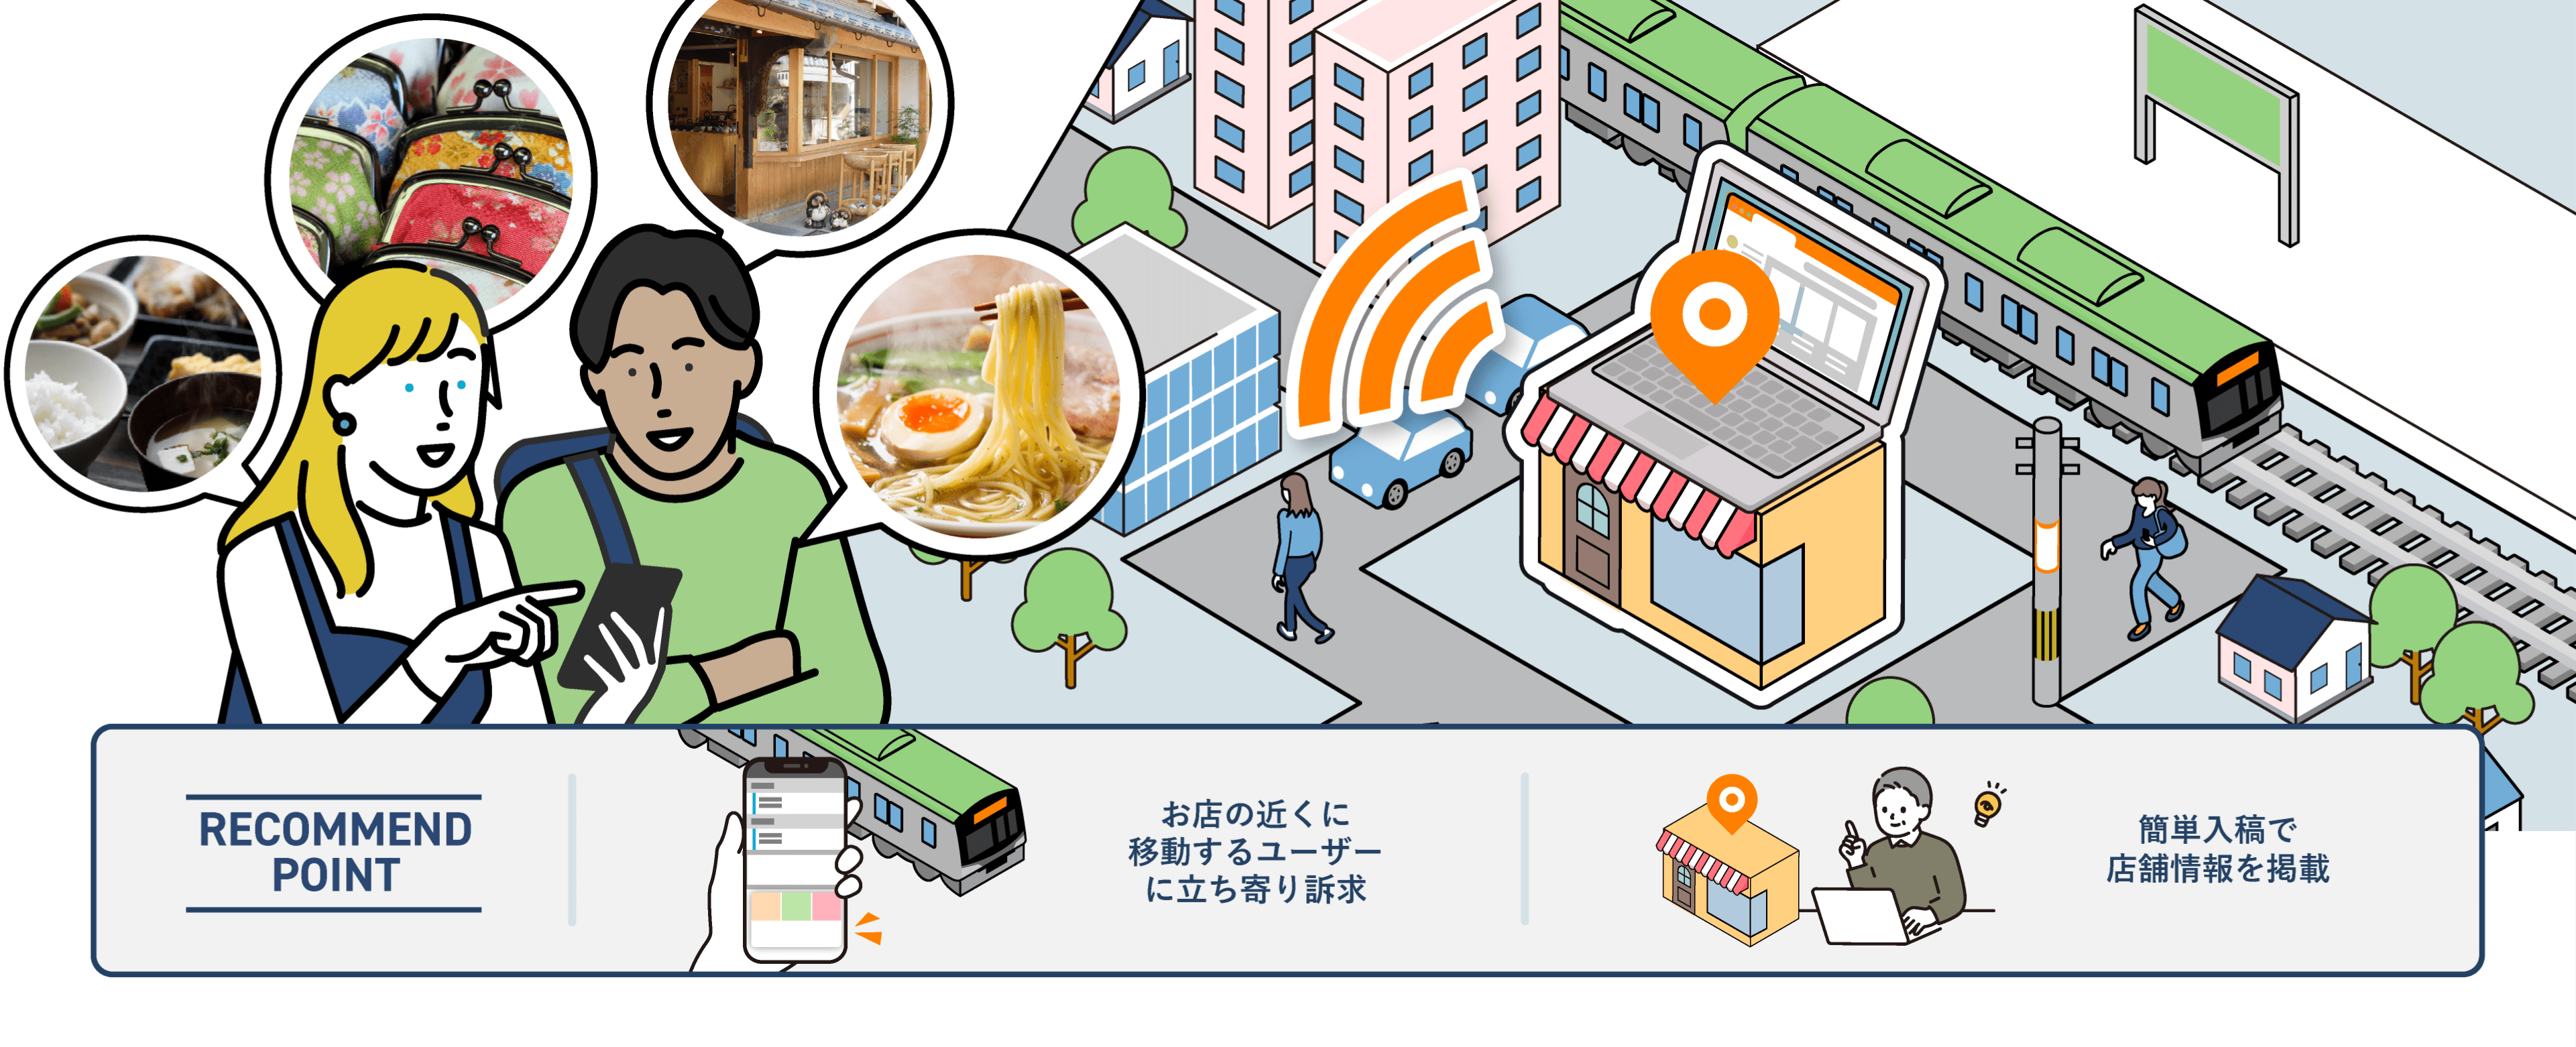 インバウンド（訪日外国人）向けに店舗集客するなら、NAVITIME マイプレイス。登録から編集、公開まで全てWeb上で完結。4言語（英語、簡体字、繁体字、韓国語）に対応。編集した情報は、訪日外国人向け観光アプリ「Japan Travel by NAVITIME」に掲載されます。